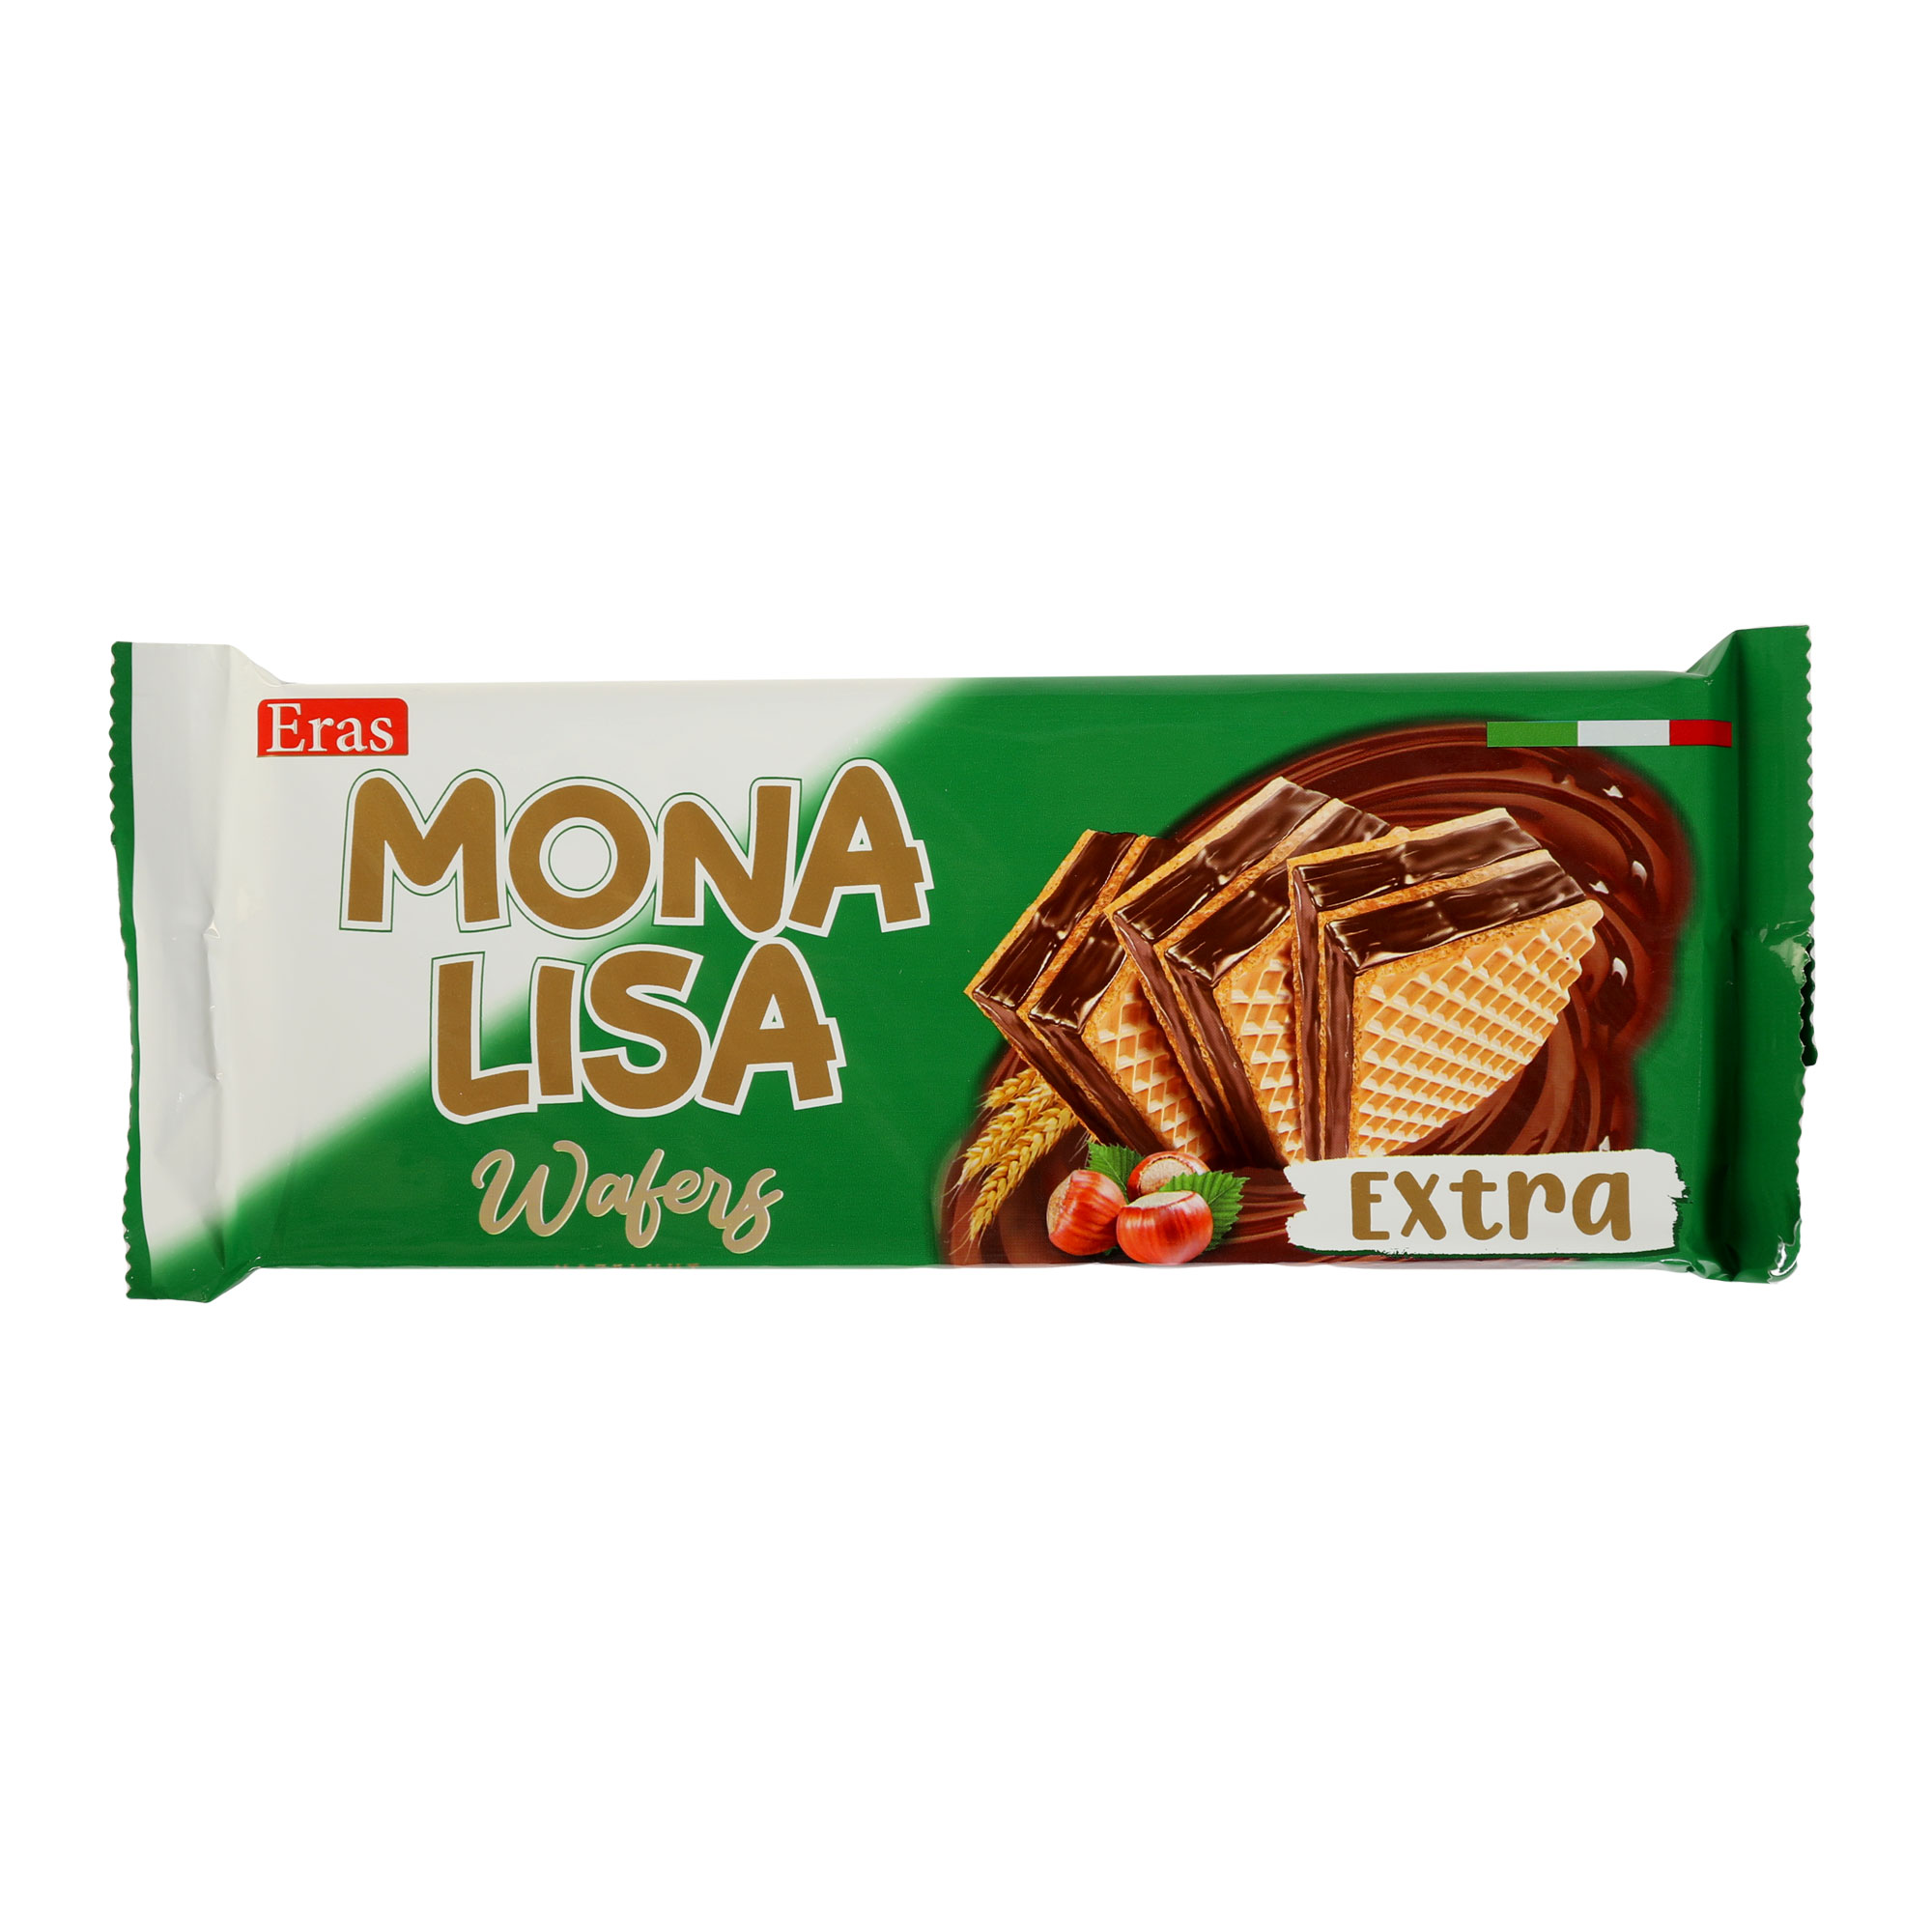 Вафли Vanelli Mona Lisa с ореховым кремом 150 г вафли с какао ореховым кремом без сахара super fudgio с подсластителем vegan 120 мл